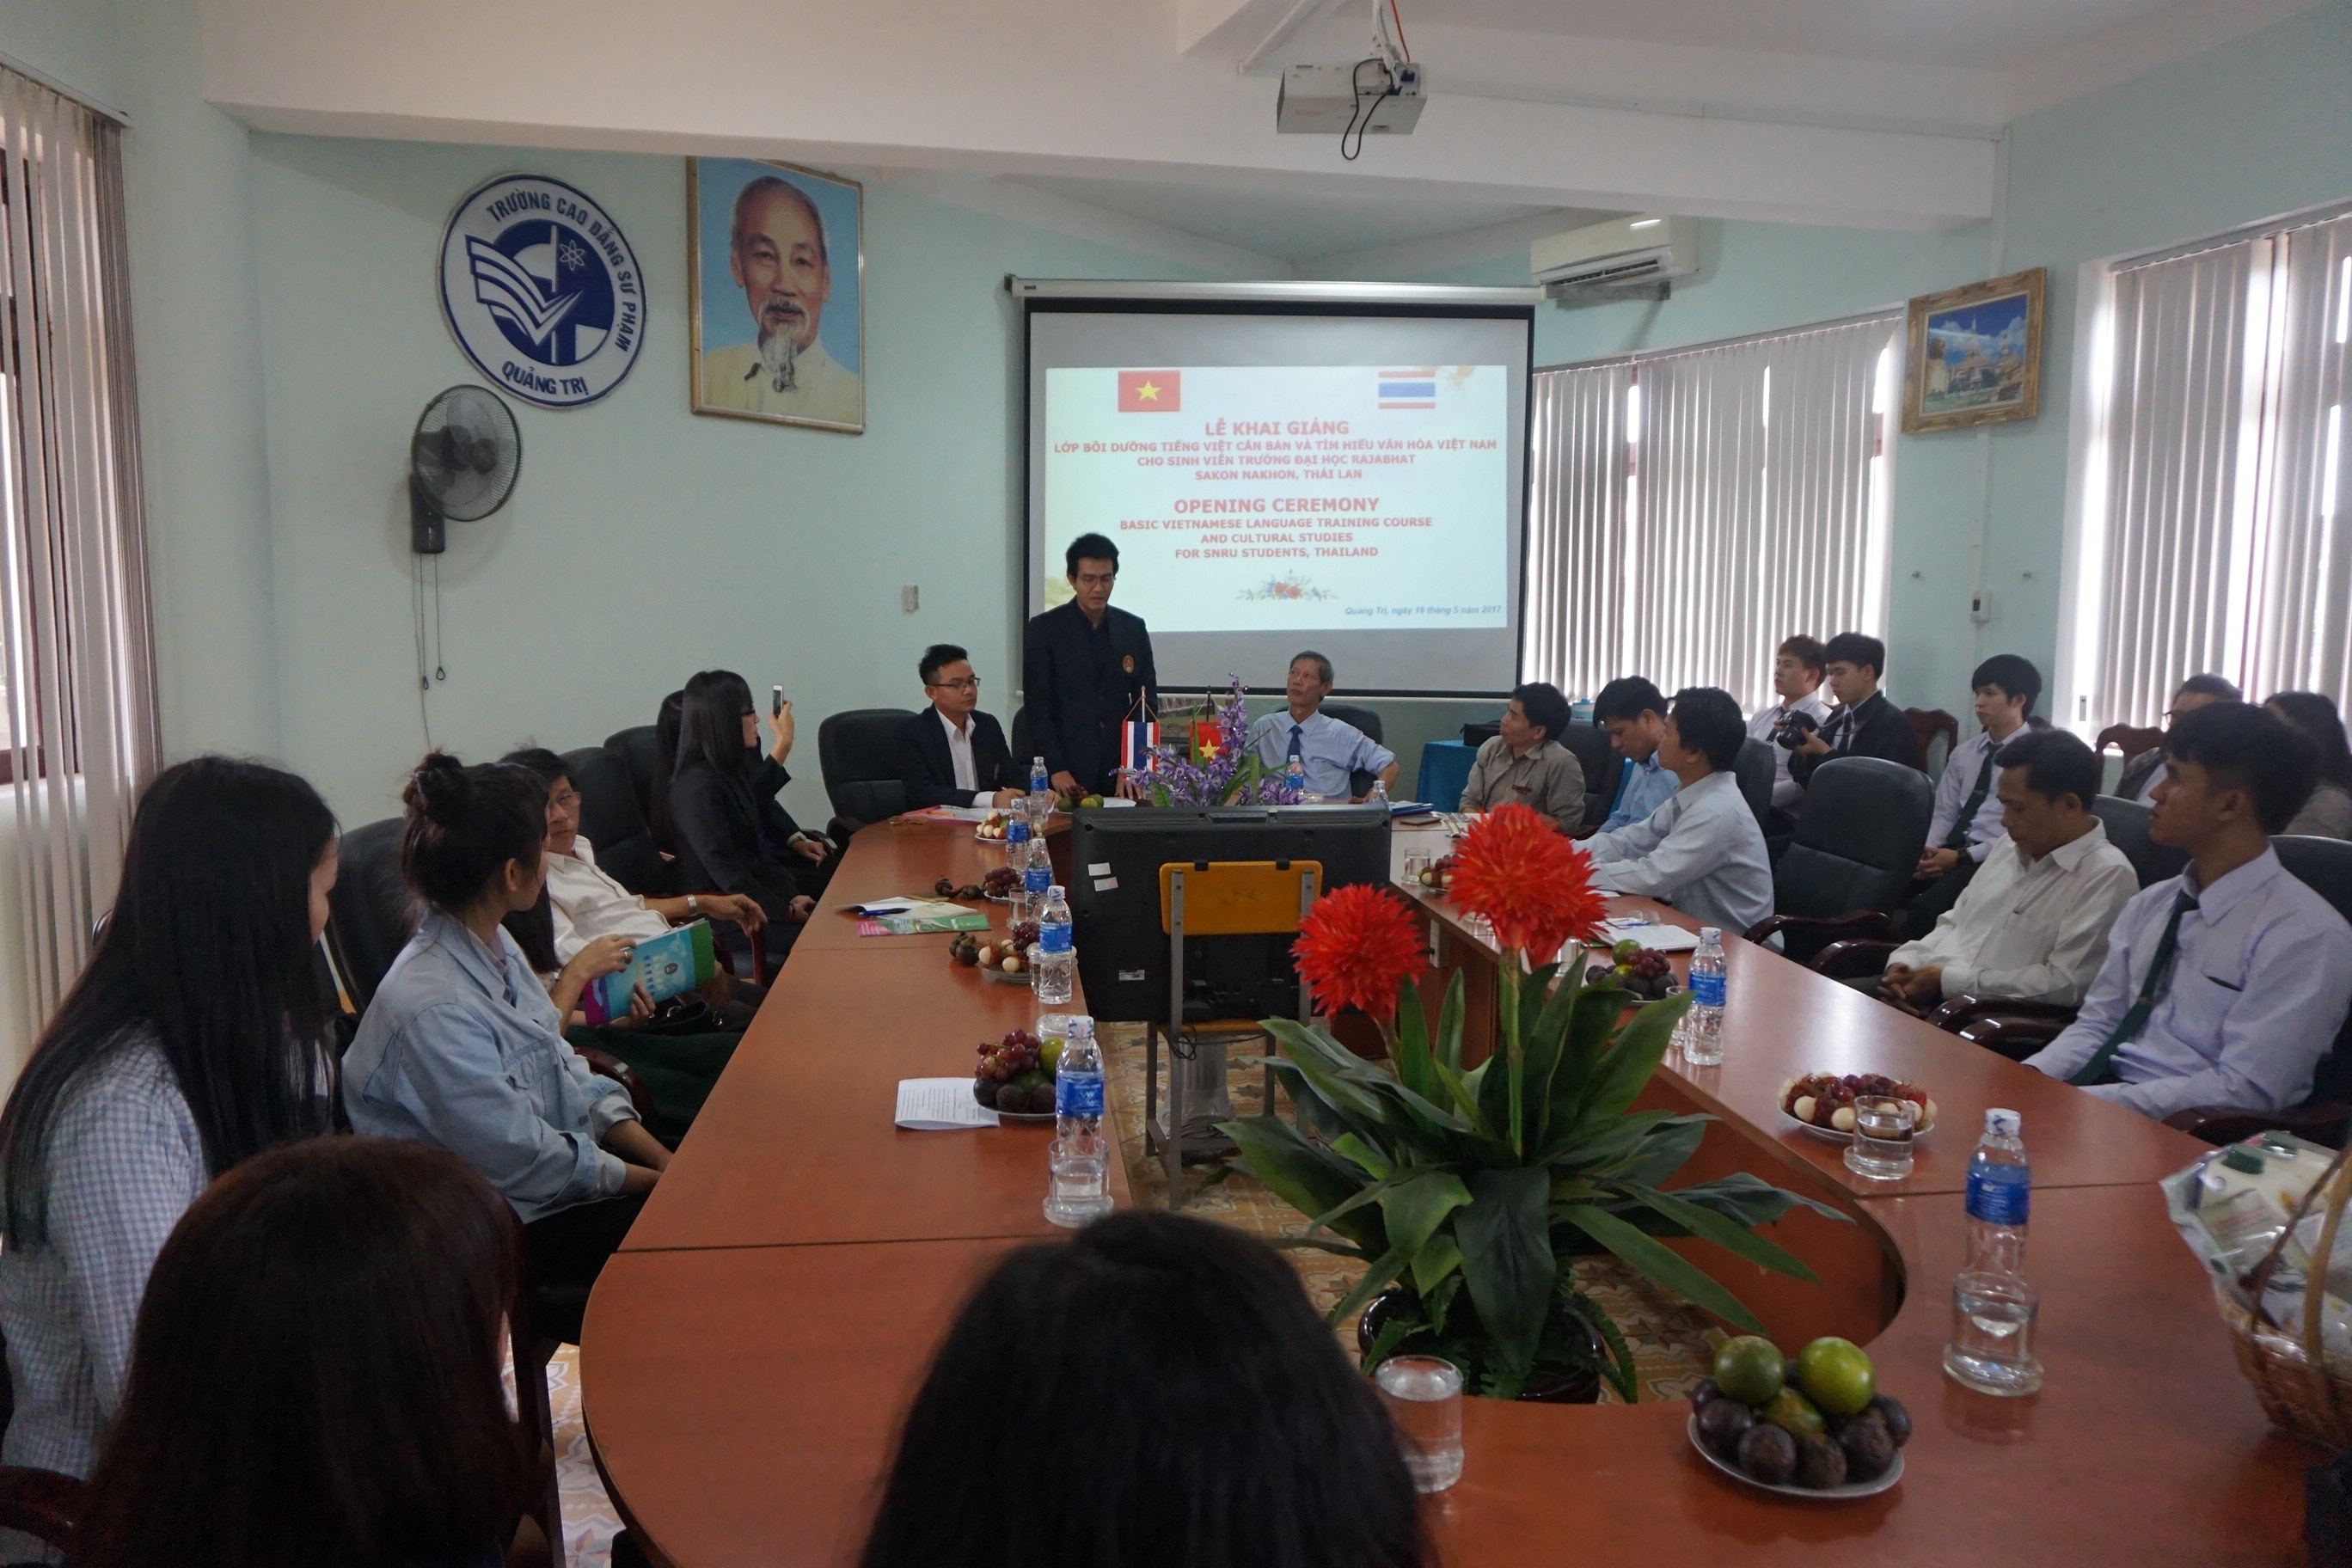 Lễ khai giảng lớp bồi dưỡng Tiếng Việt căn bản cho sinh viên trường Đại học Rajabhat Sakon Nakhon, Thái Lan tại trường CĐSP Quảng Trị